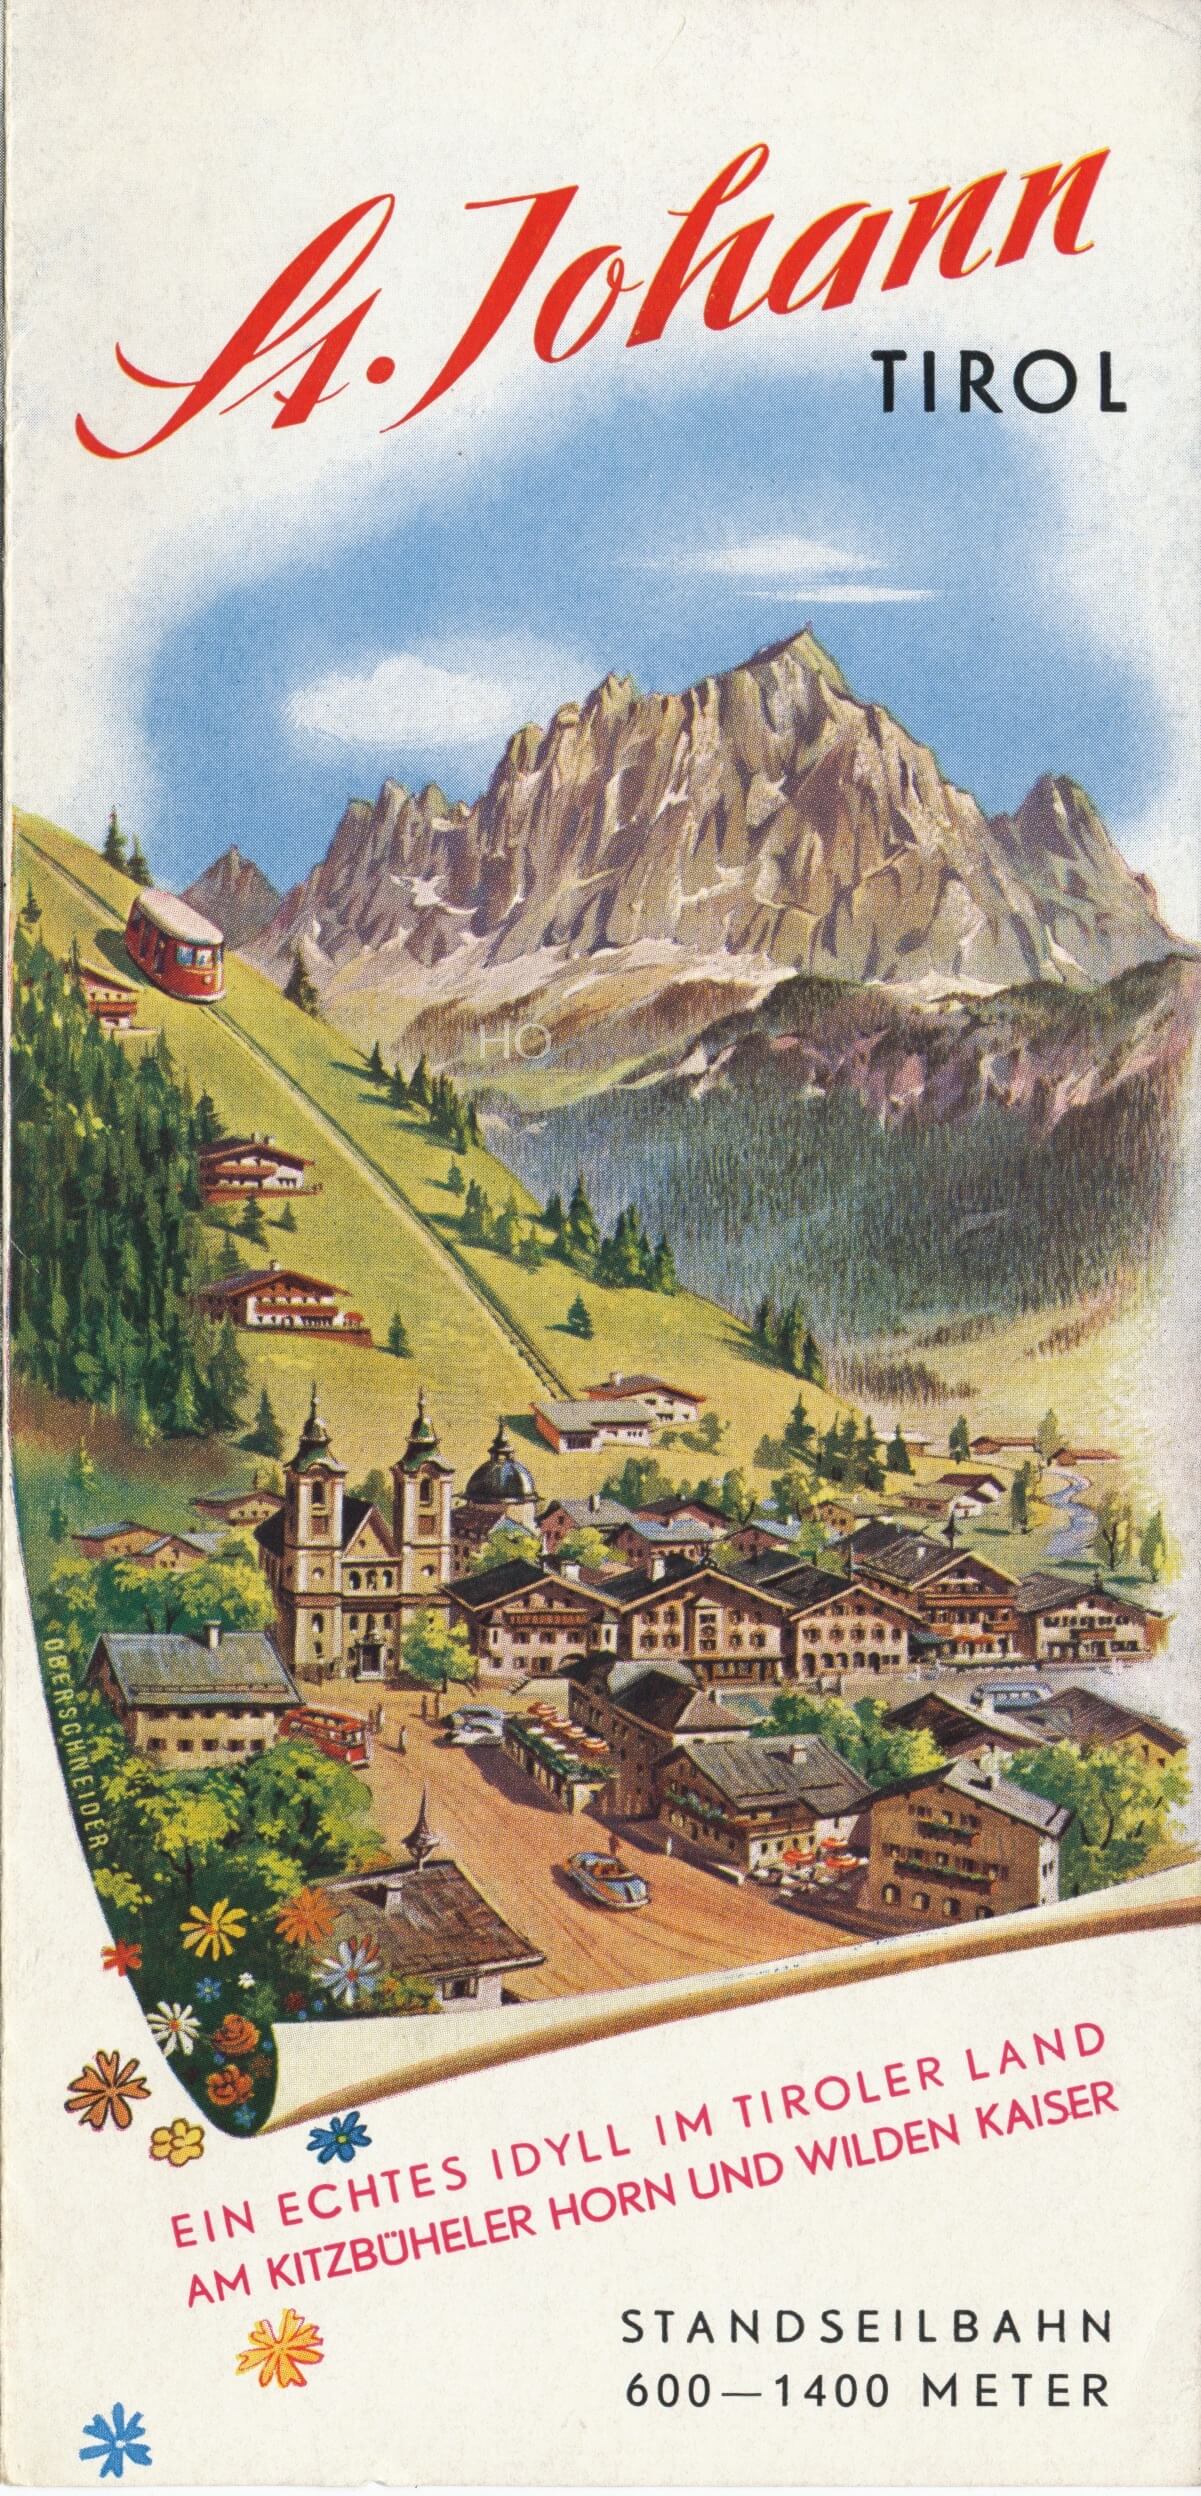 Gezeichnetes Titelbild vom Sommerprospekt St Johann in Tirol von Hans Oberschneider